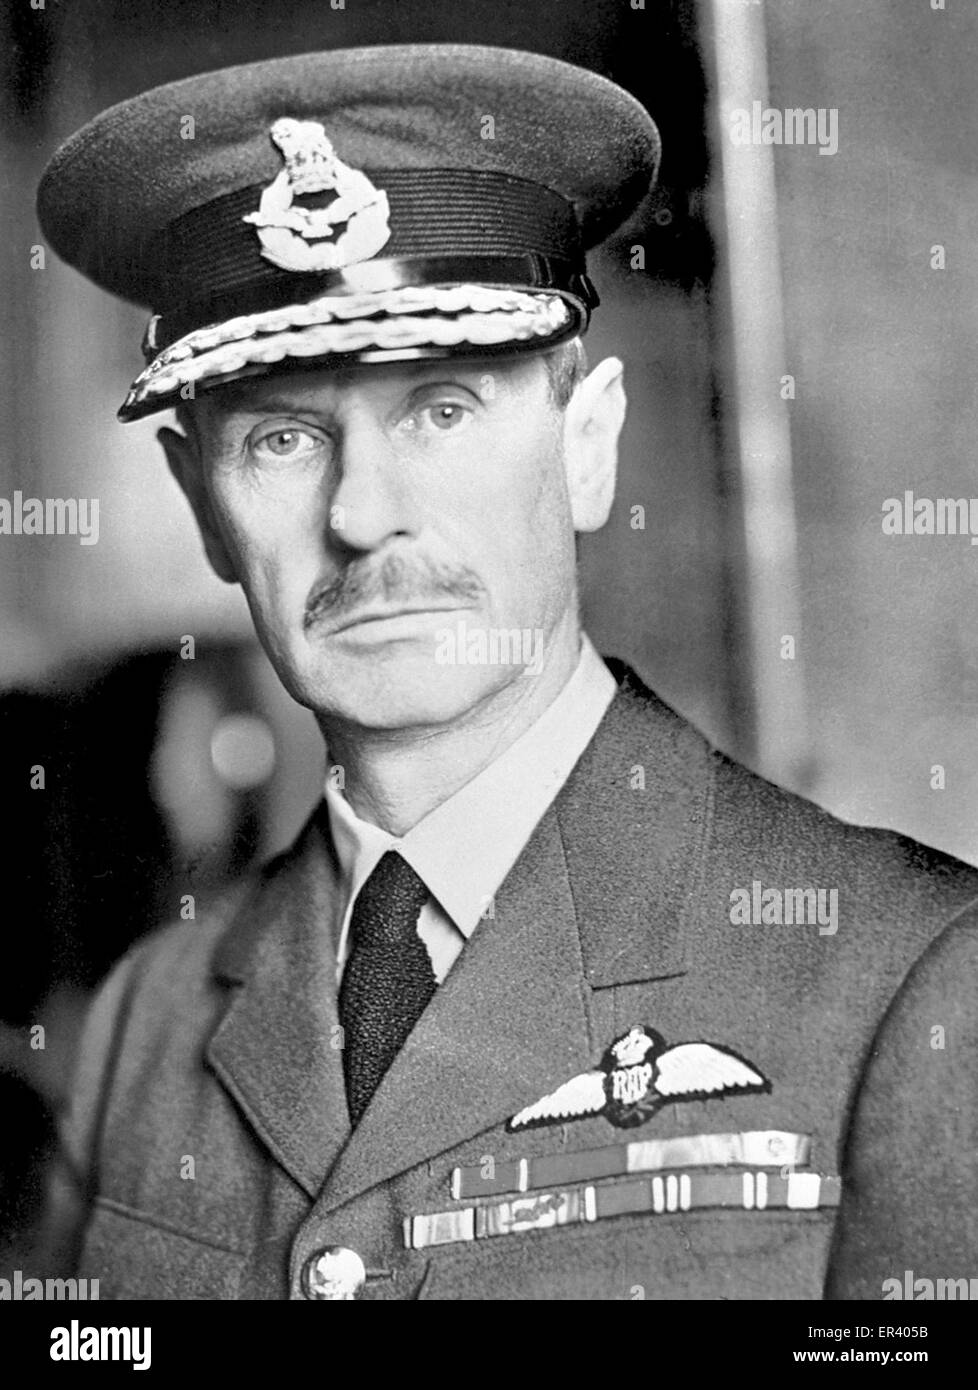 Il comandante in capo, AIR CHIEF MARSHAL Sir Hugh Dowding. Air Chief Marshal Hugh Caswall Tremenheere Dowding, primo Baron Dowding, ufficiale britannico nella Royal Air Force. Foto Stock